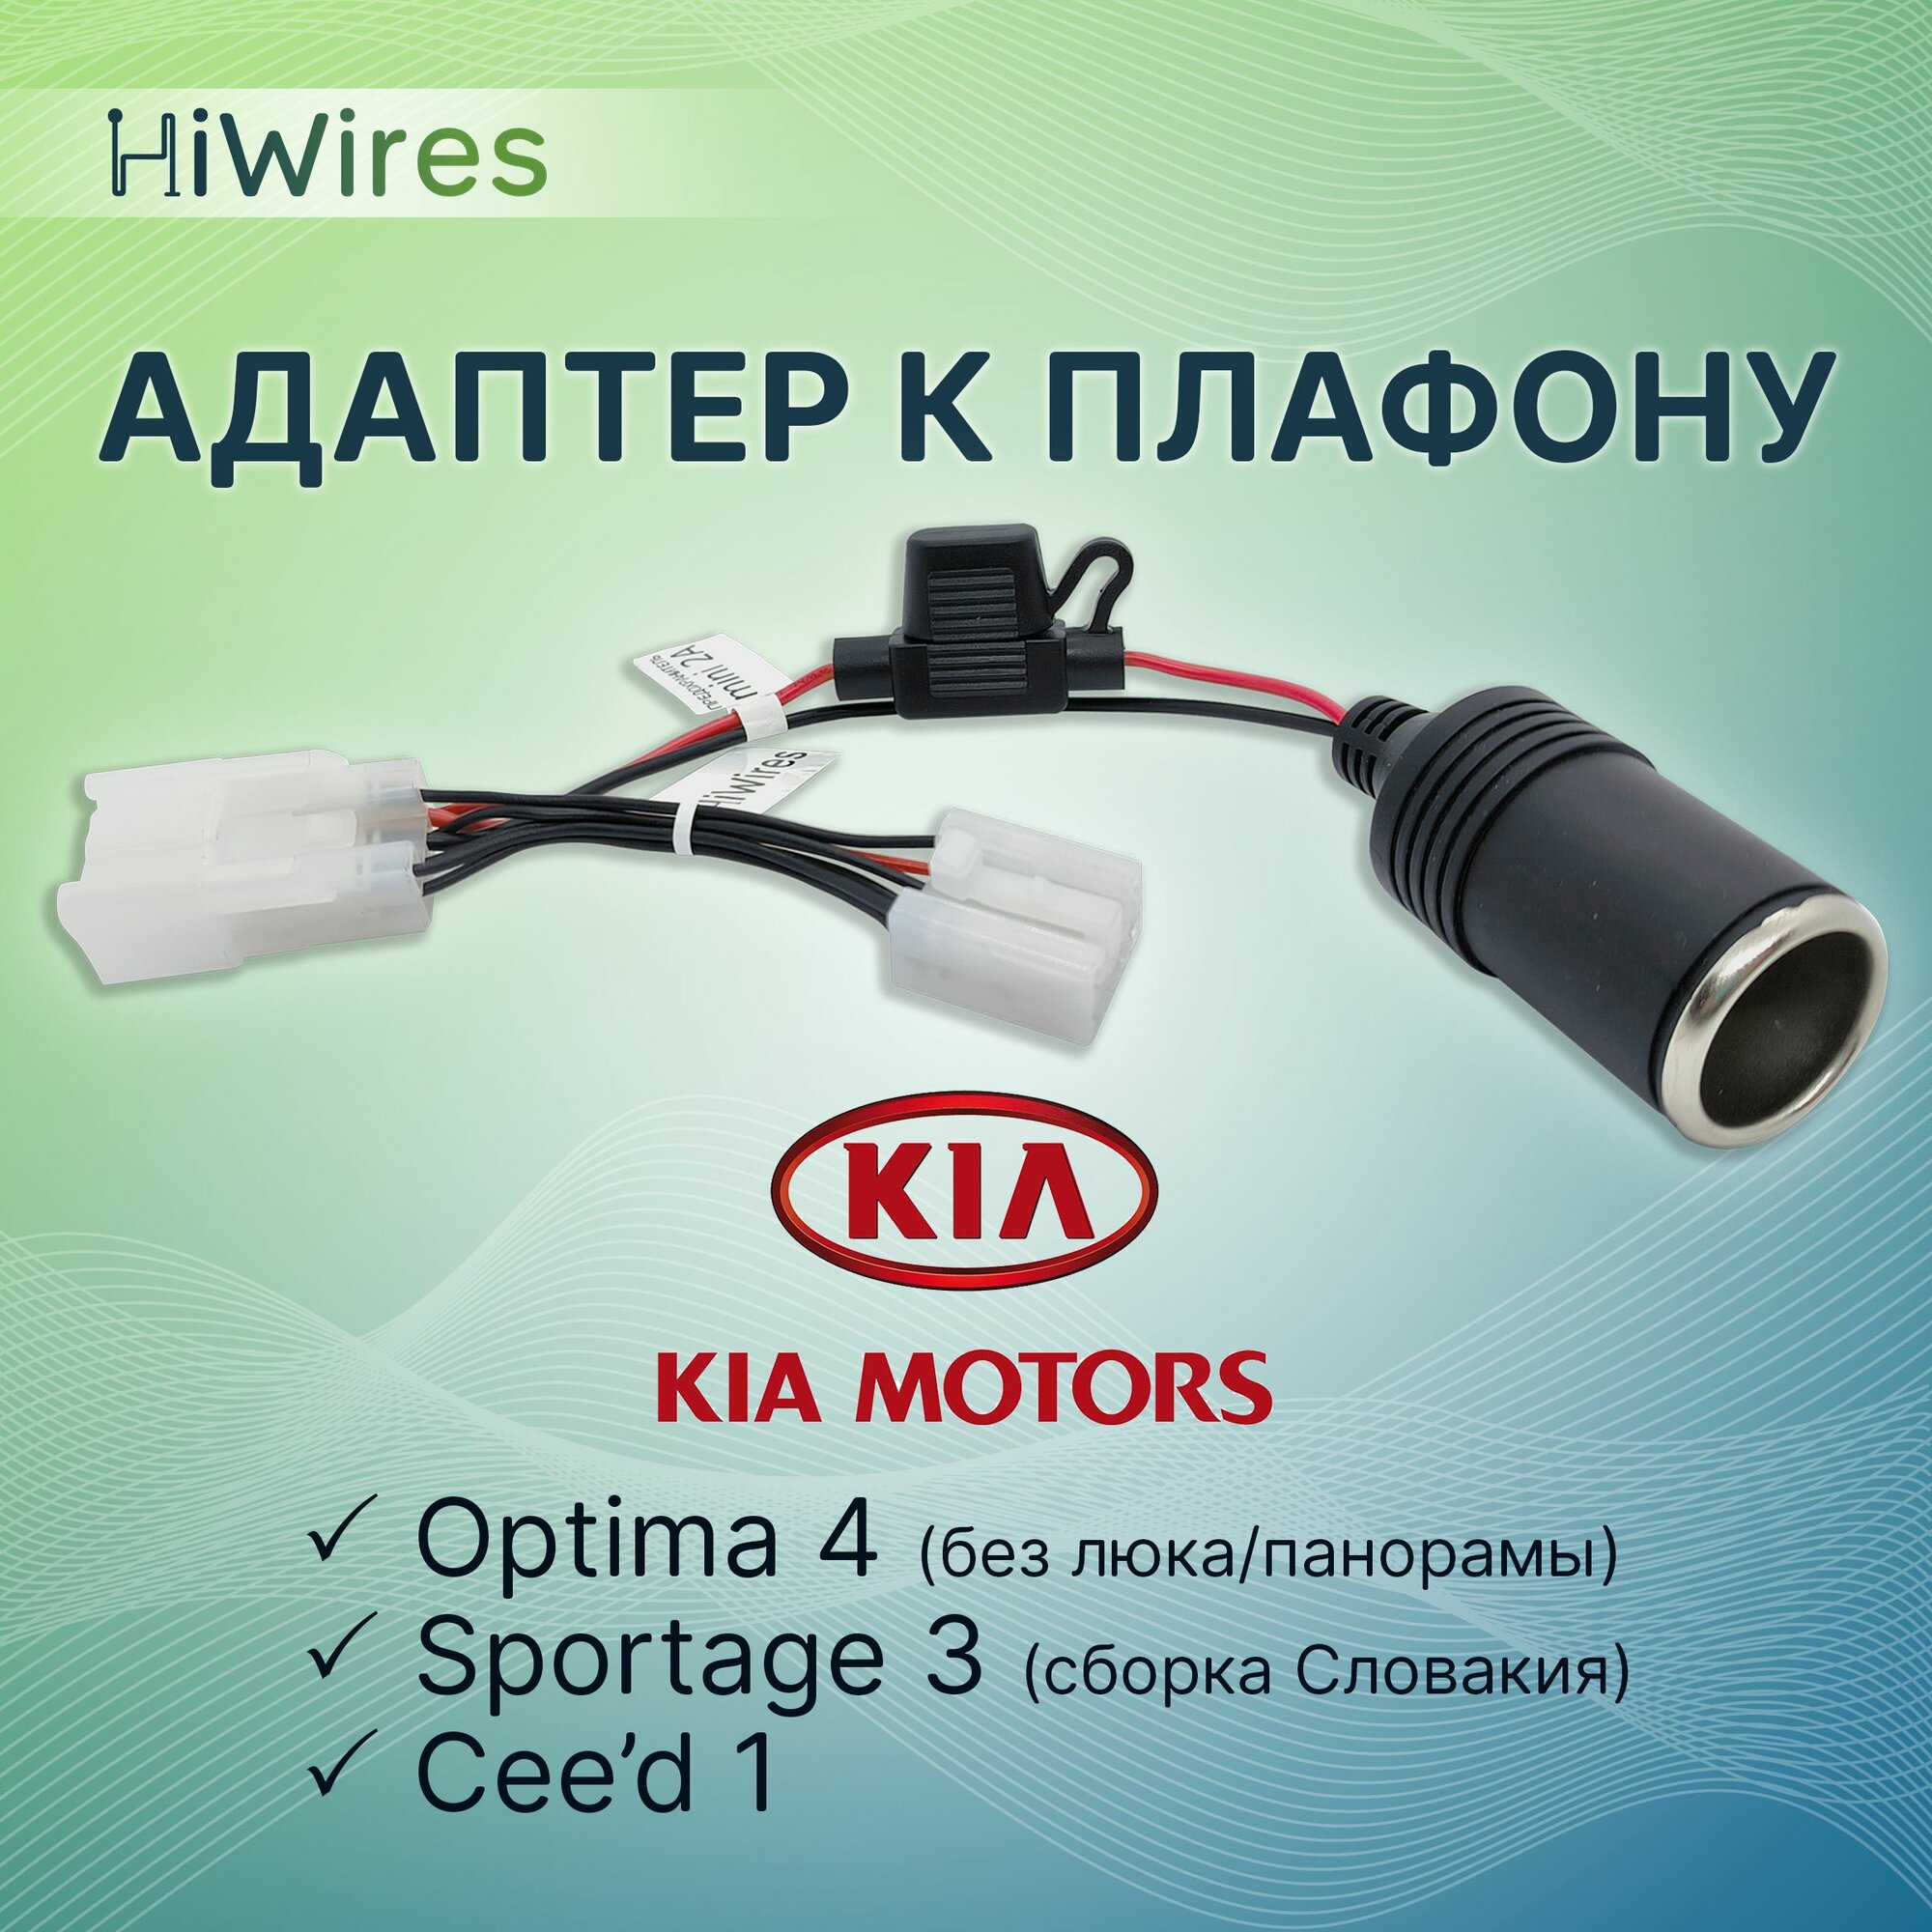 Адаптер к плафону для скрытого подключения питания видеорегистратора с прикуривателем 12В Kia Optima Sportage Ceed